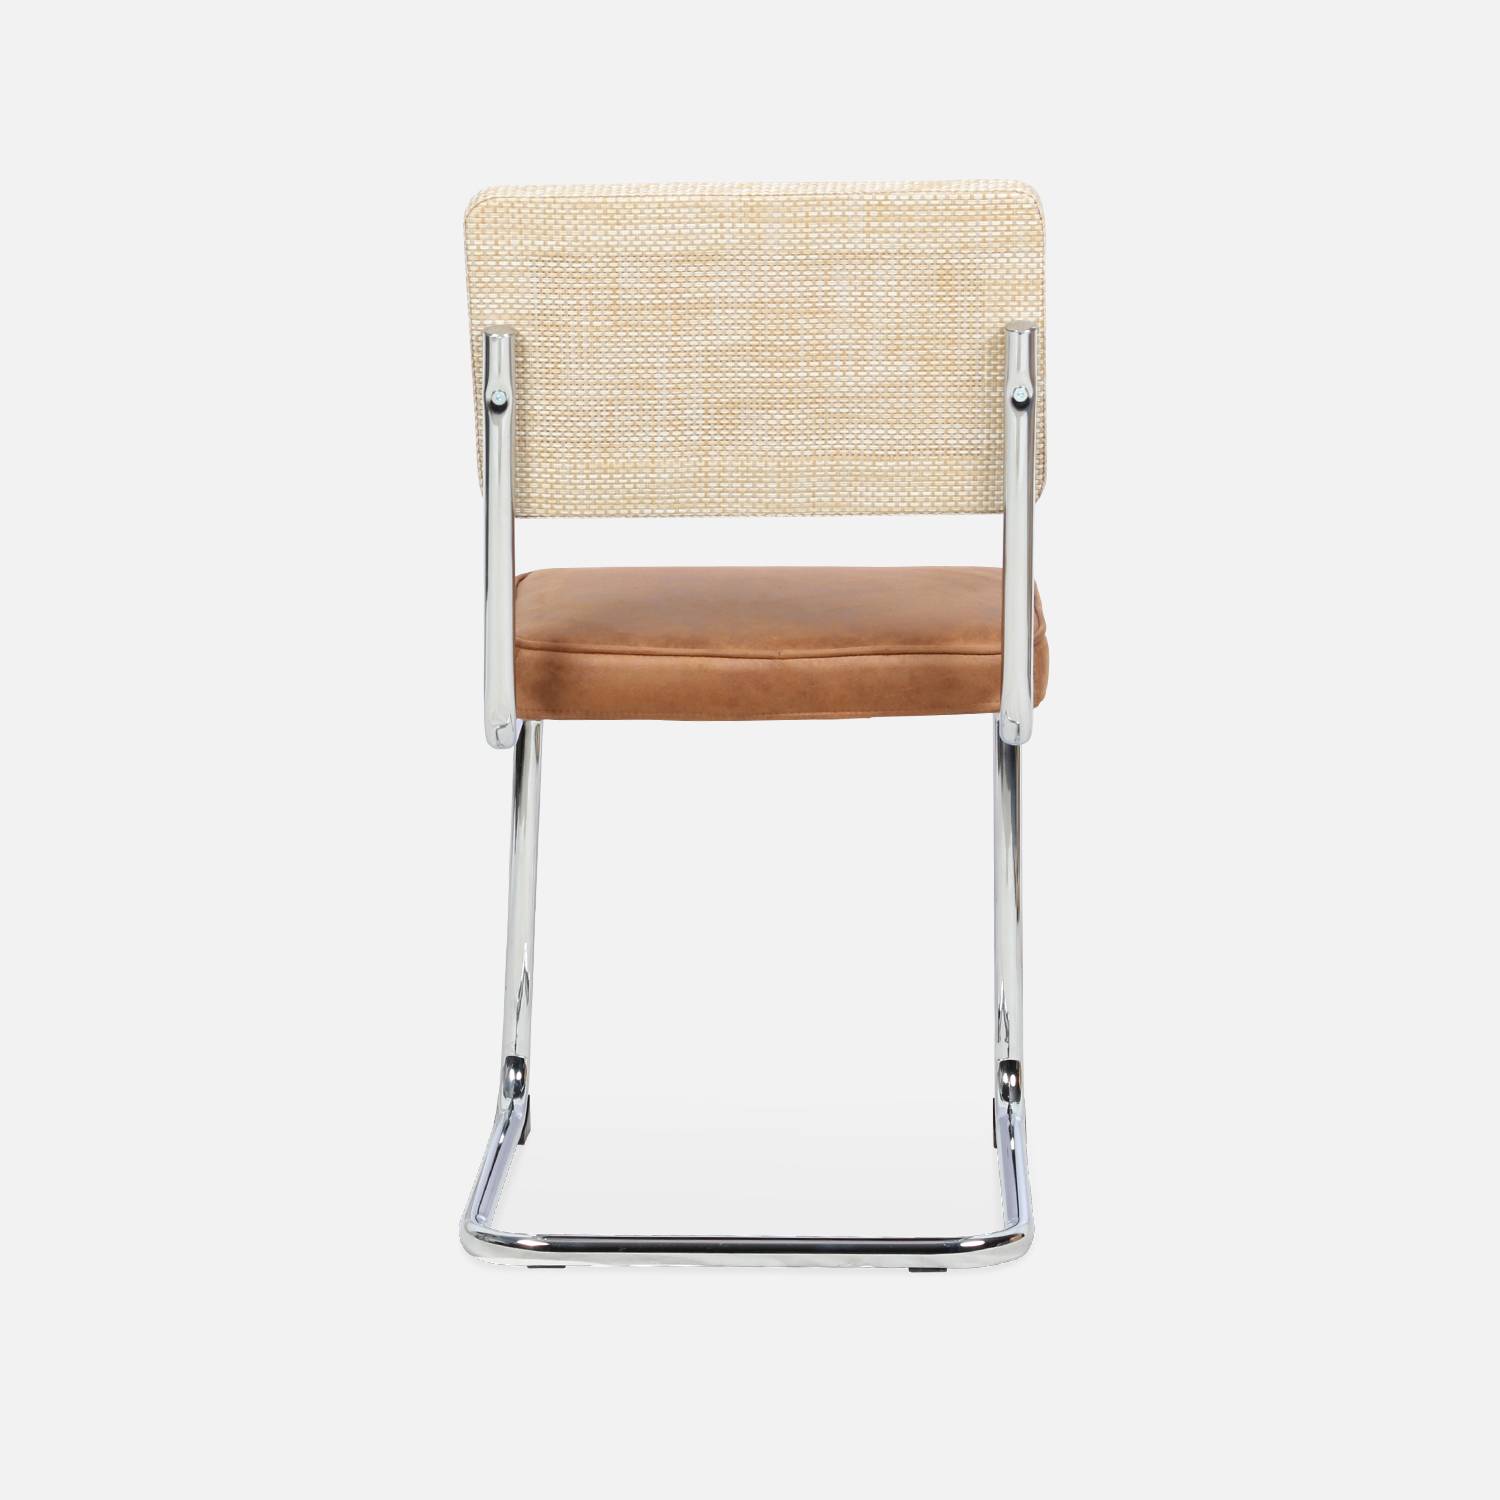 2 cadeiras cantilever - Maja - tecido castanho claro e resina com efeito de rotim, 46 x 54,5 x 84,5 cm Photo8